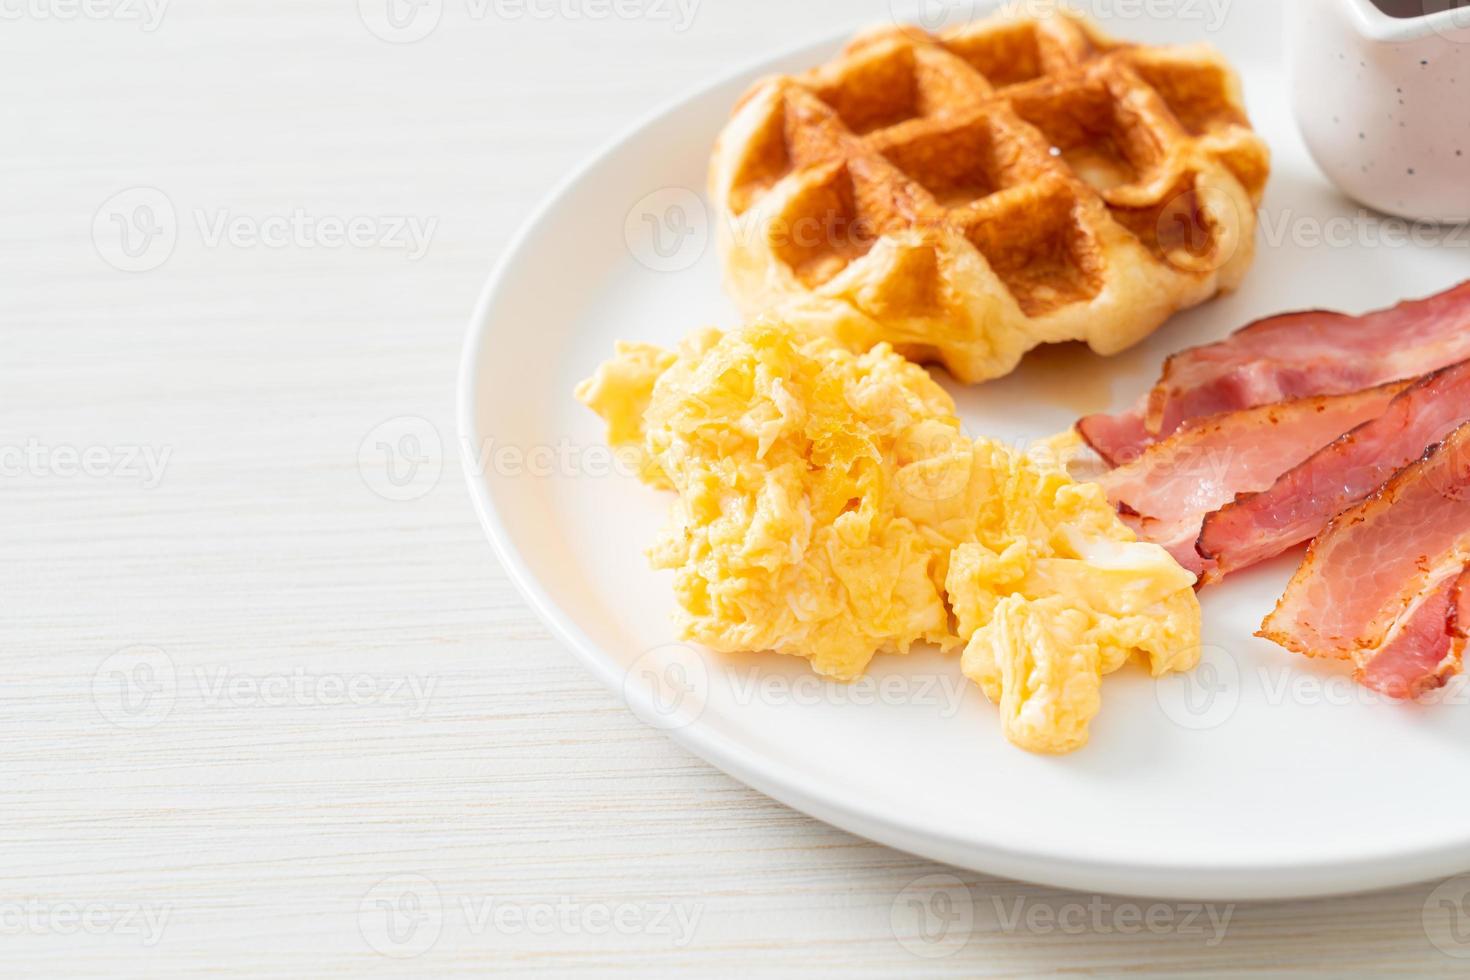 uova strapazzate con bacon e waffle a colazione foto